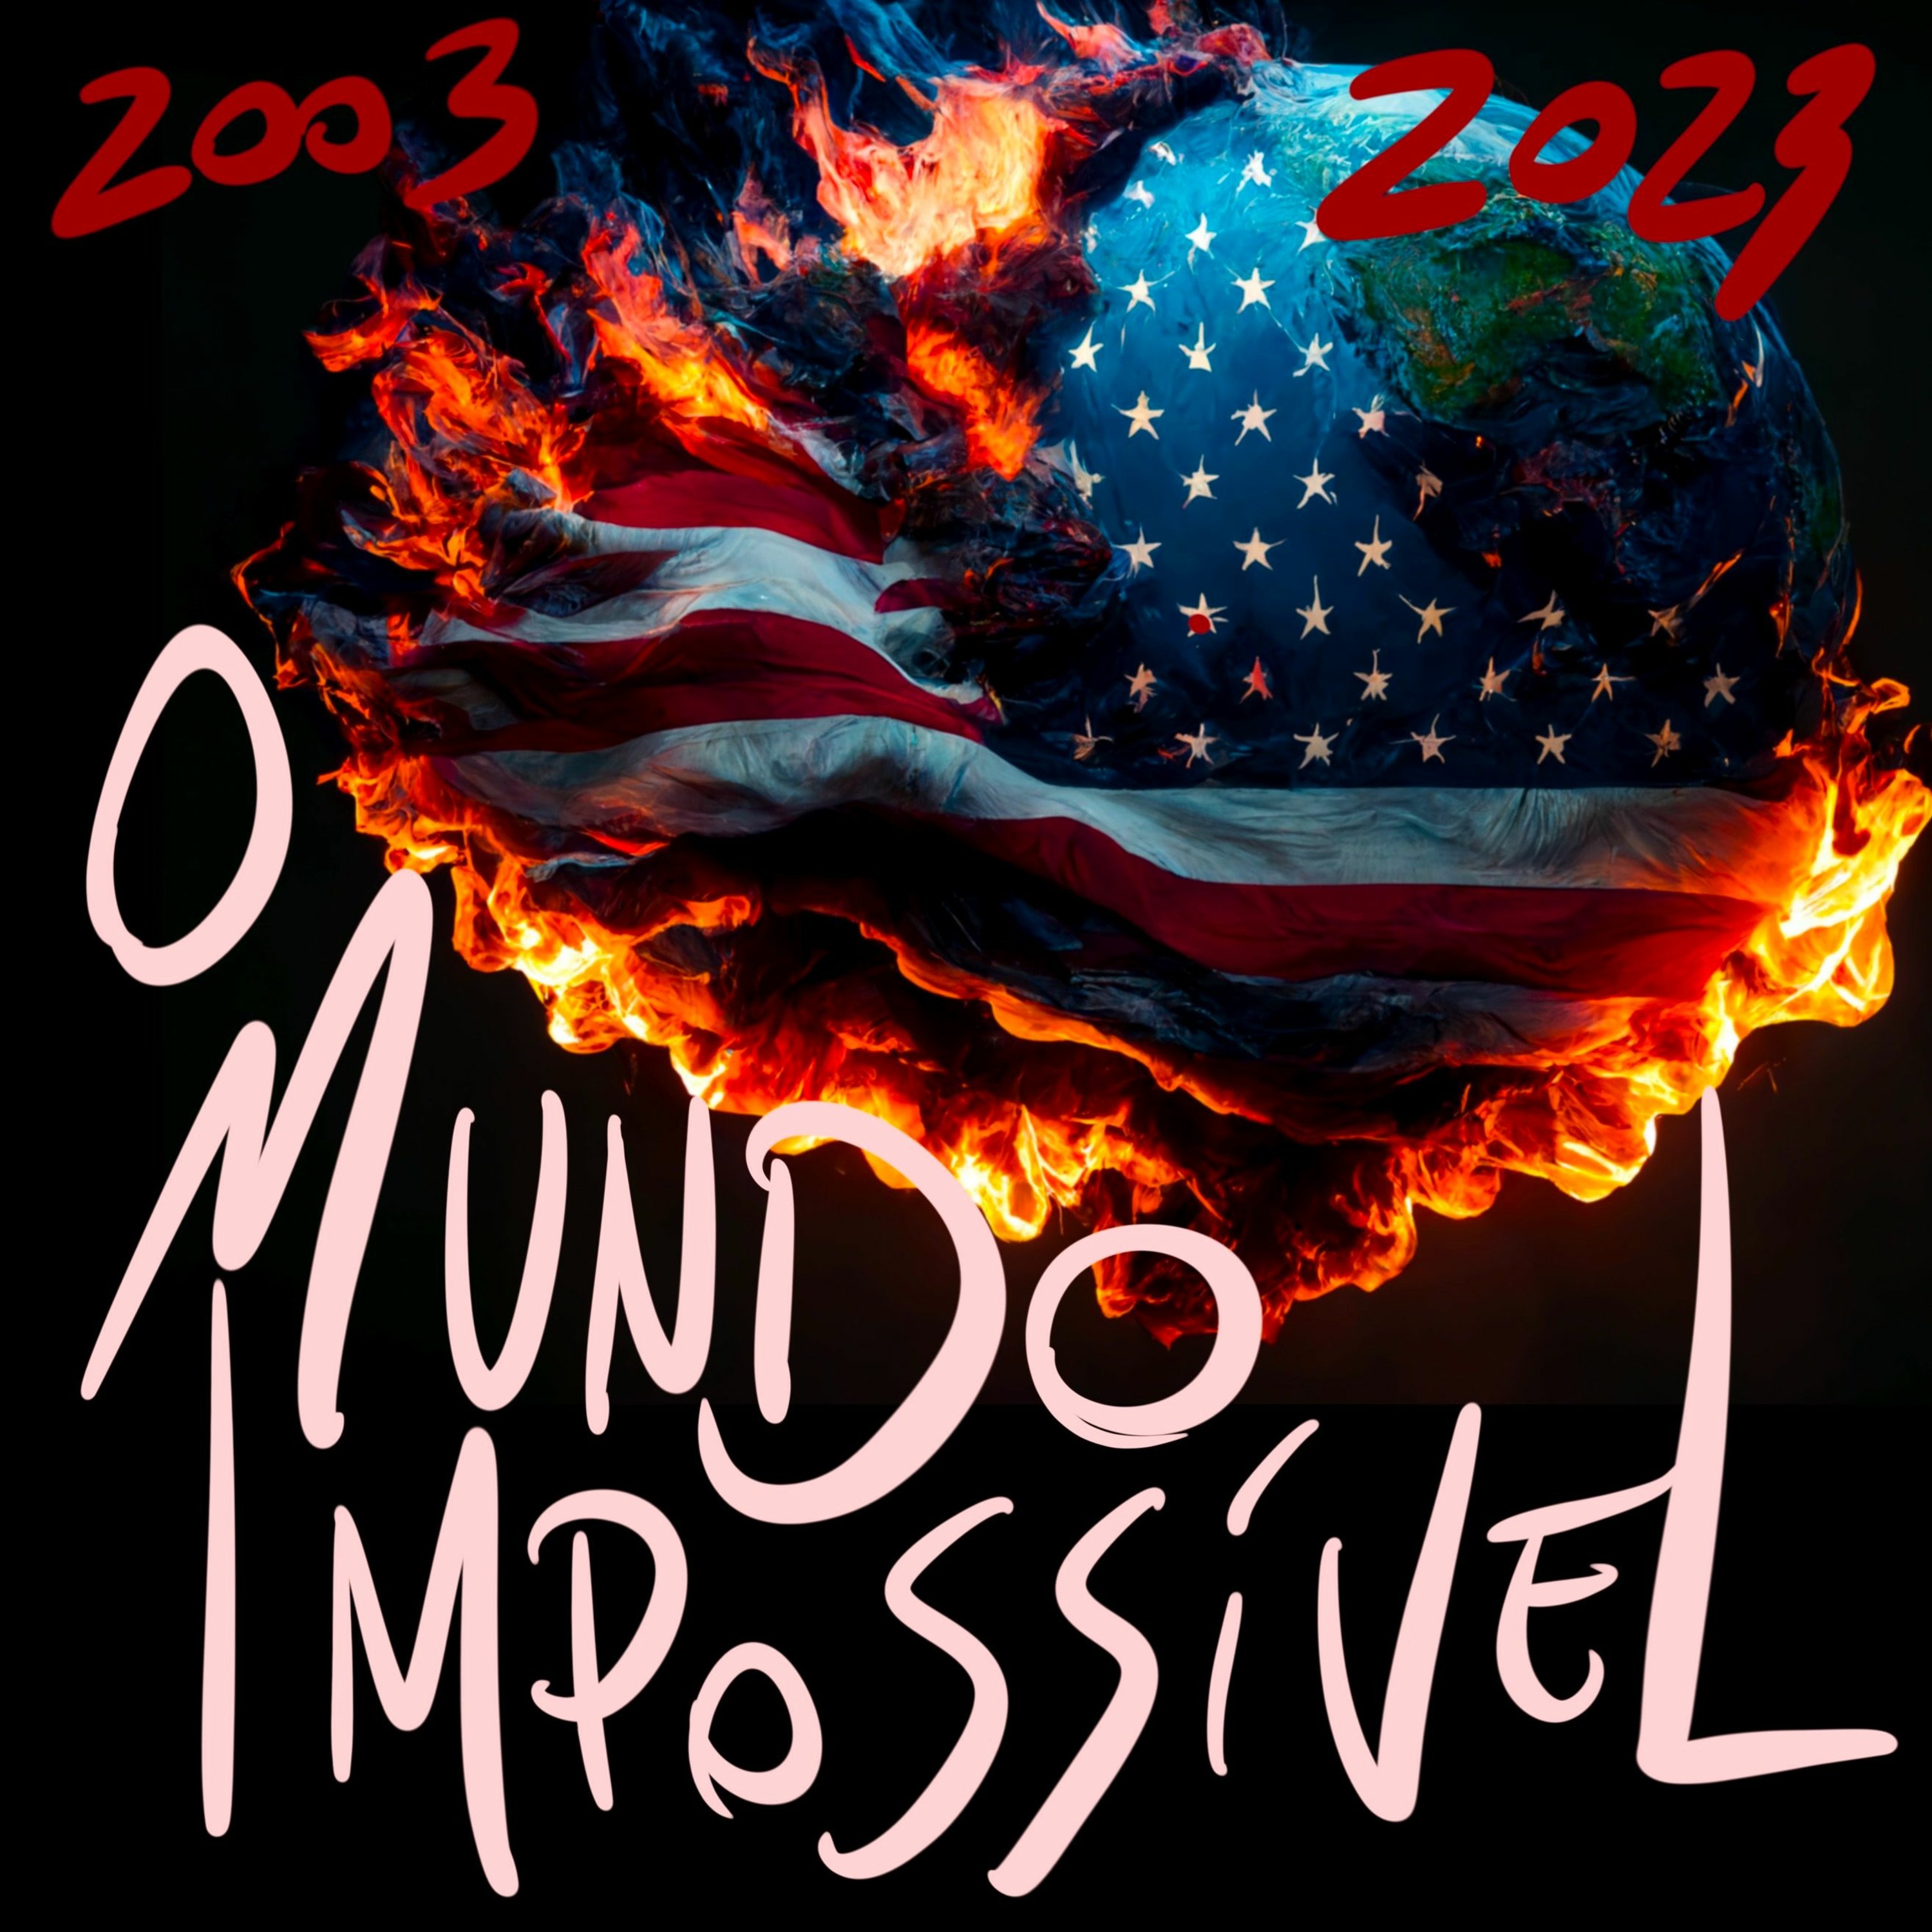 BFM - 20/3/23 - O Mundo Impossível - 2003 a 2023